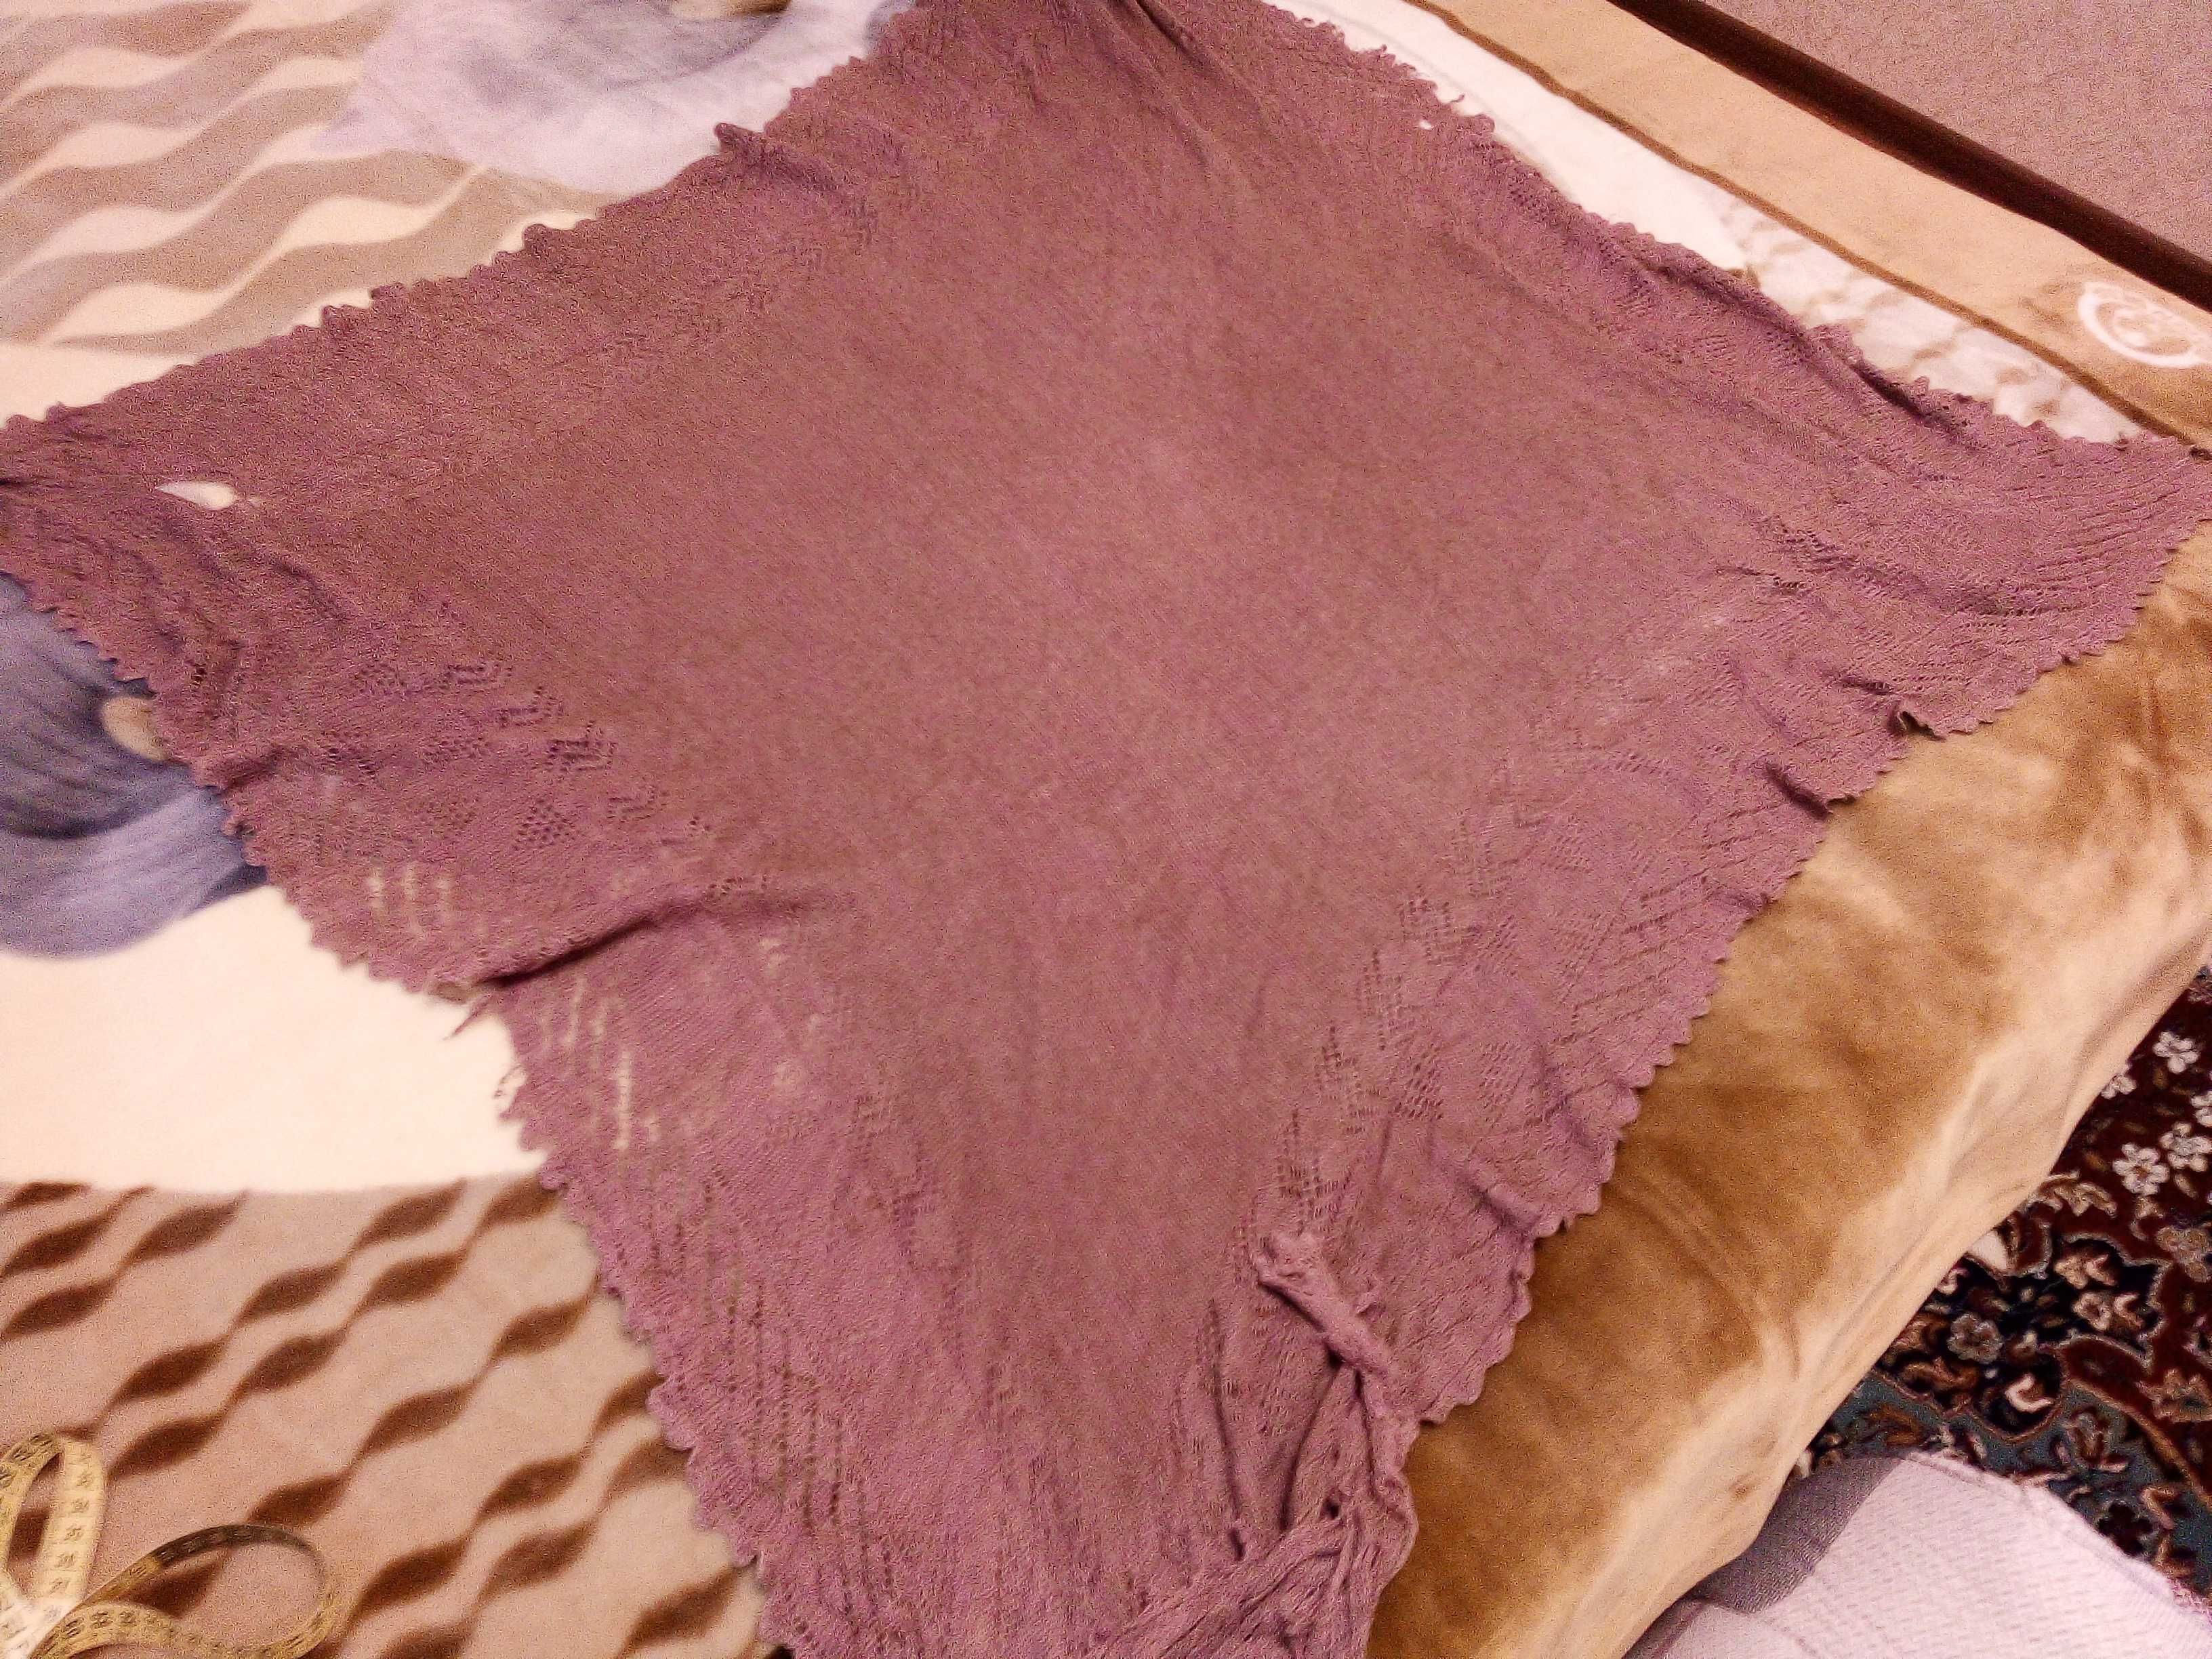 Старый большой пуховый платок(можно обвязывать спину при болях)